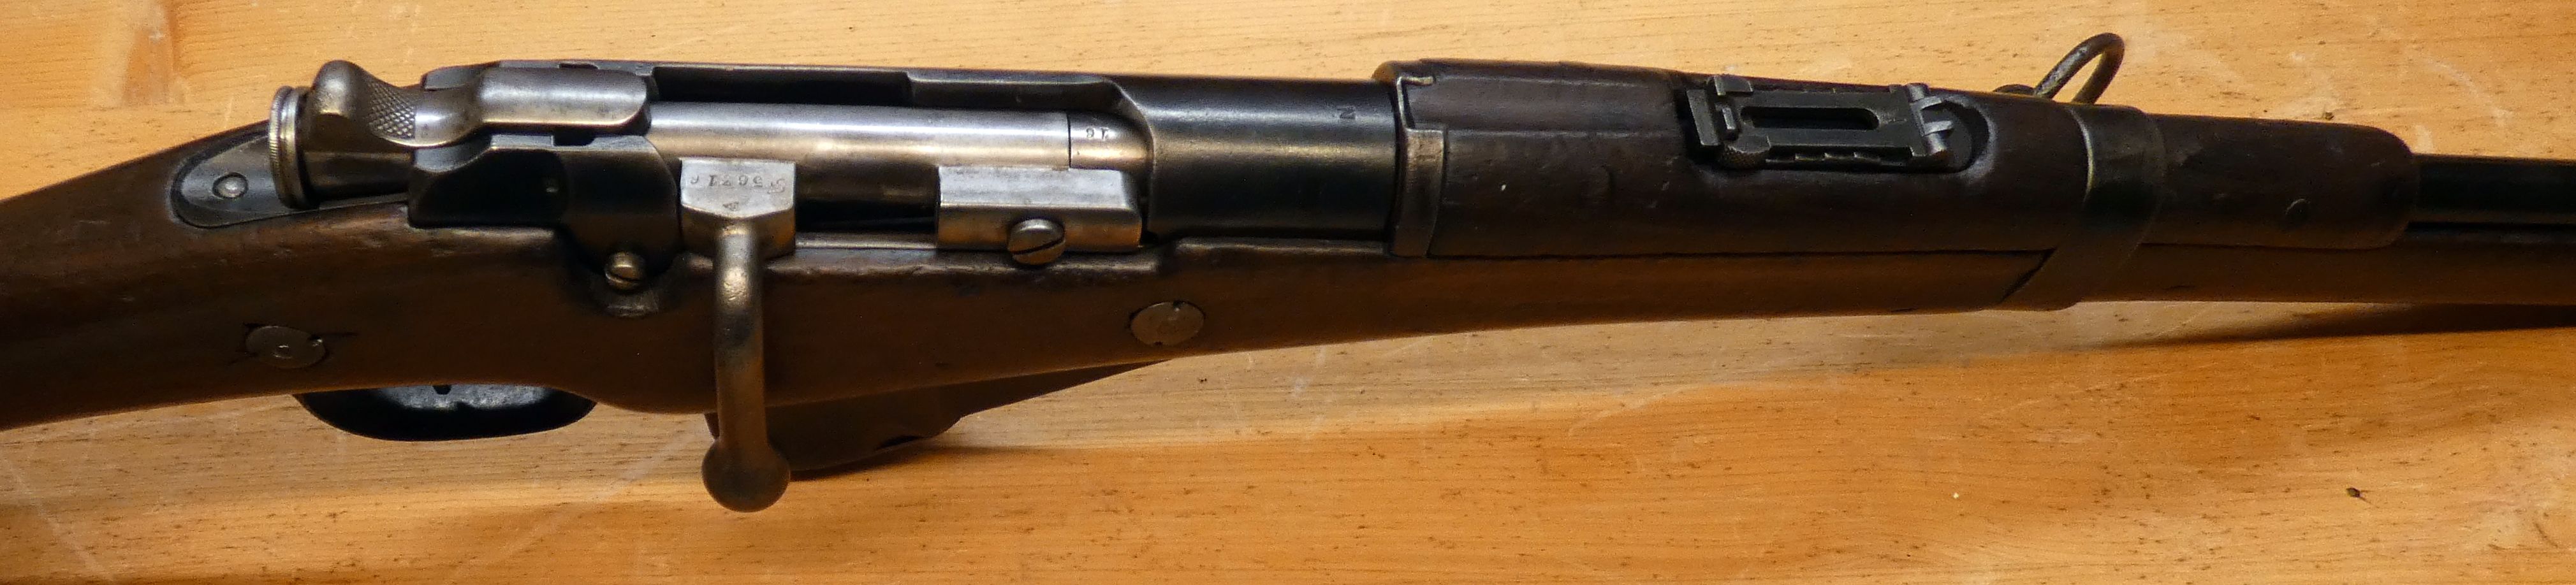 présentation d'une carabine Mle 1890 transformée 1916 21